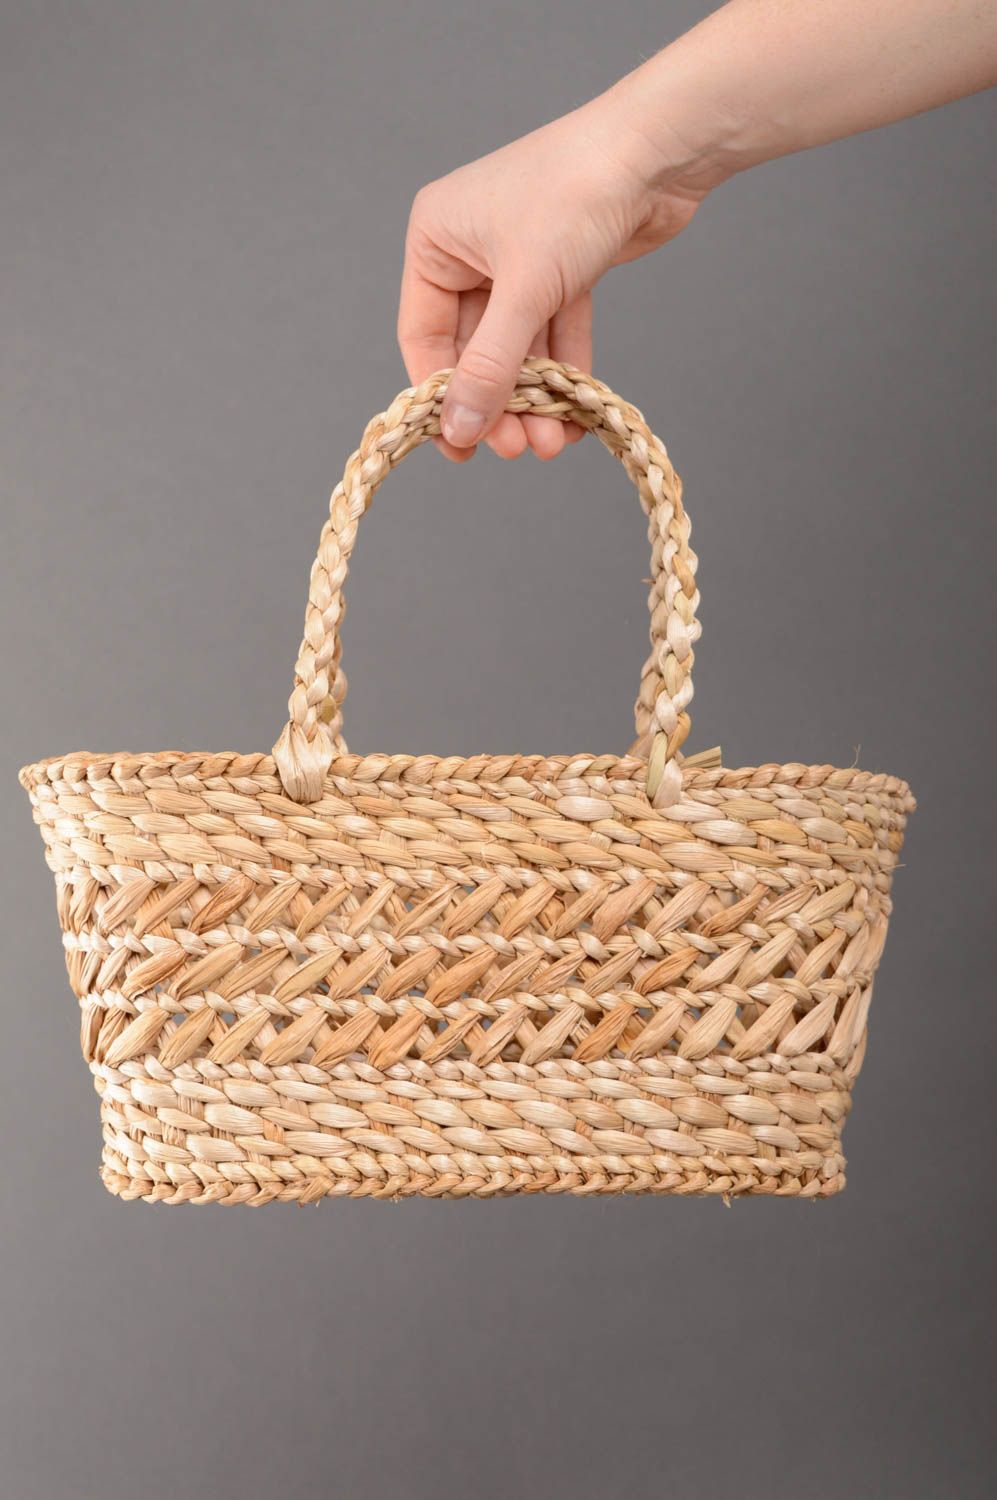 Beautiful reedmace woven basket purse photo 5